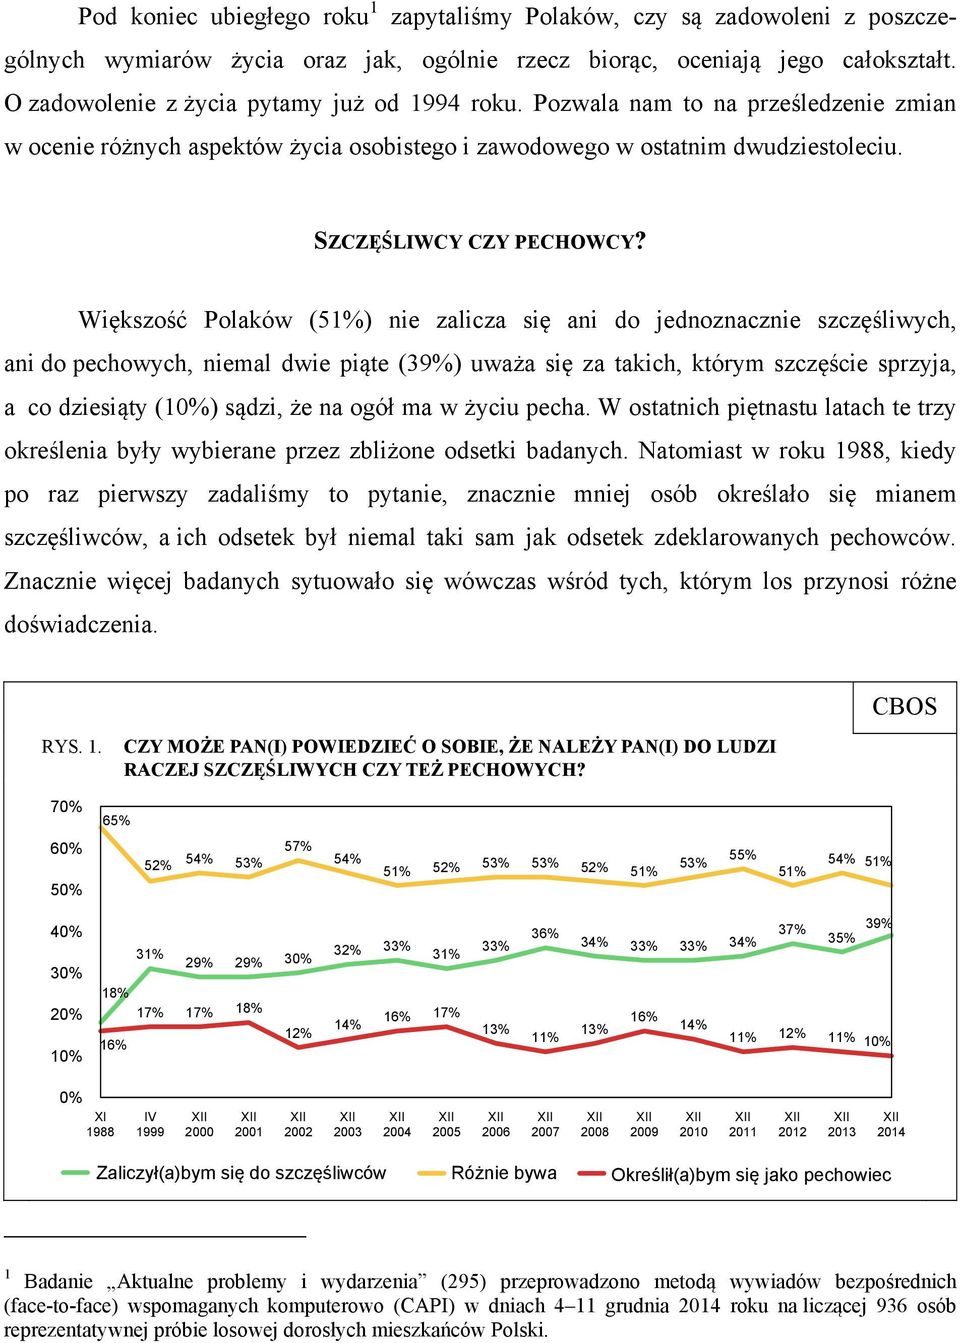 Większość Polaków (51%) nie zalicza się ani do jednoznacznie szczęśliwych, ani do pechowych, niemal dwie piąte (39%) uważa się za takich, którym szczęście sprzyja, a co dziesiąty (10%) sądzi, że na